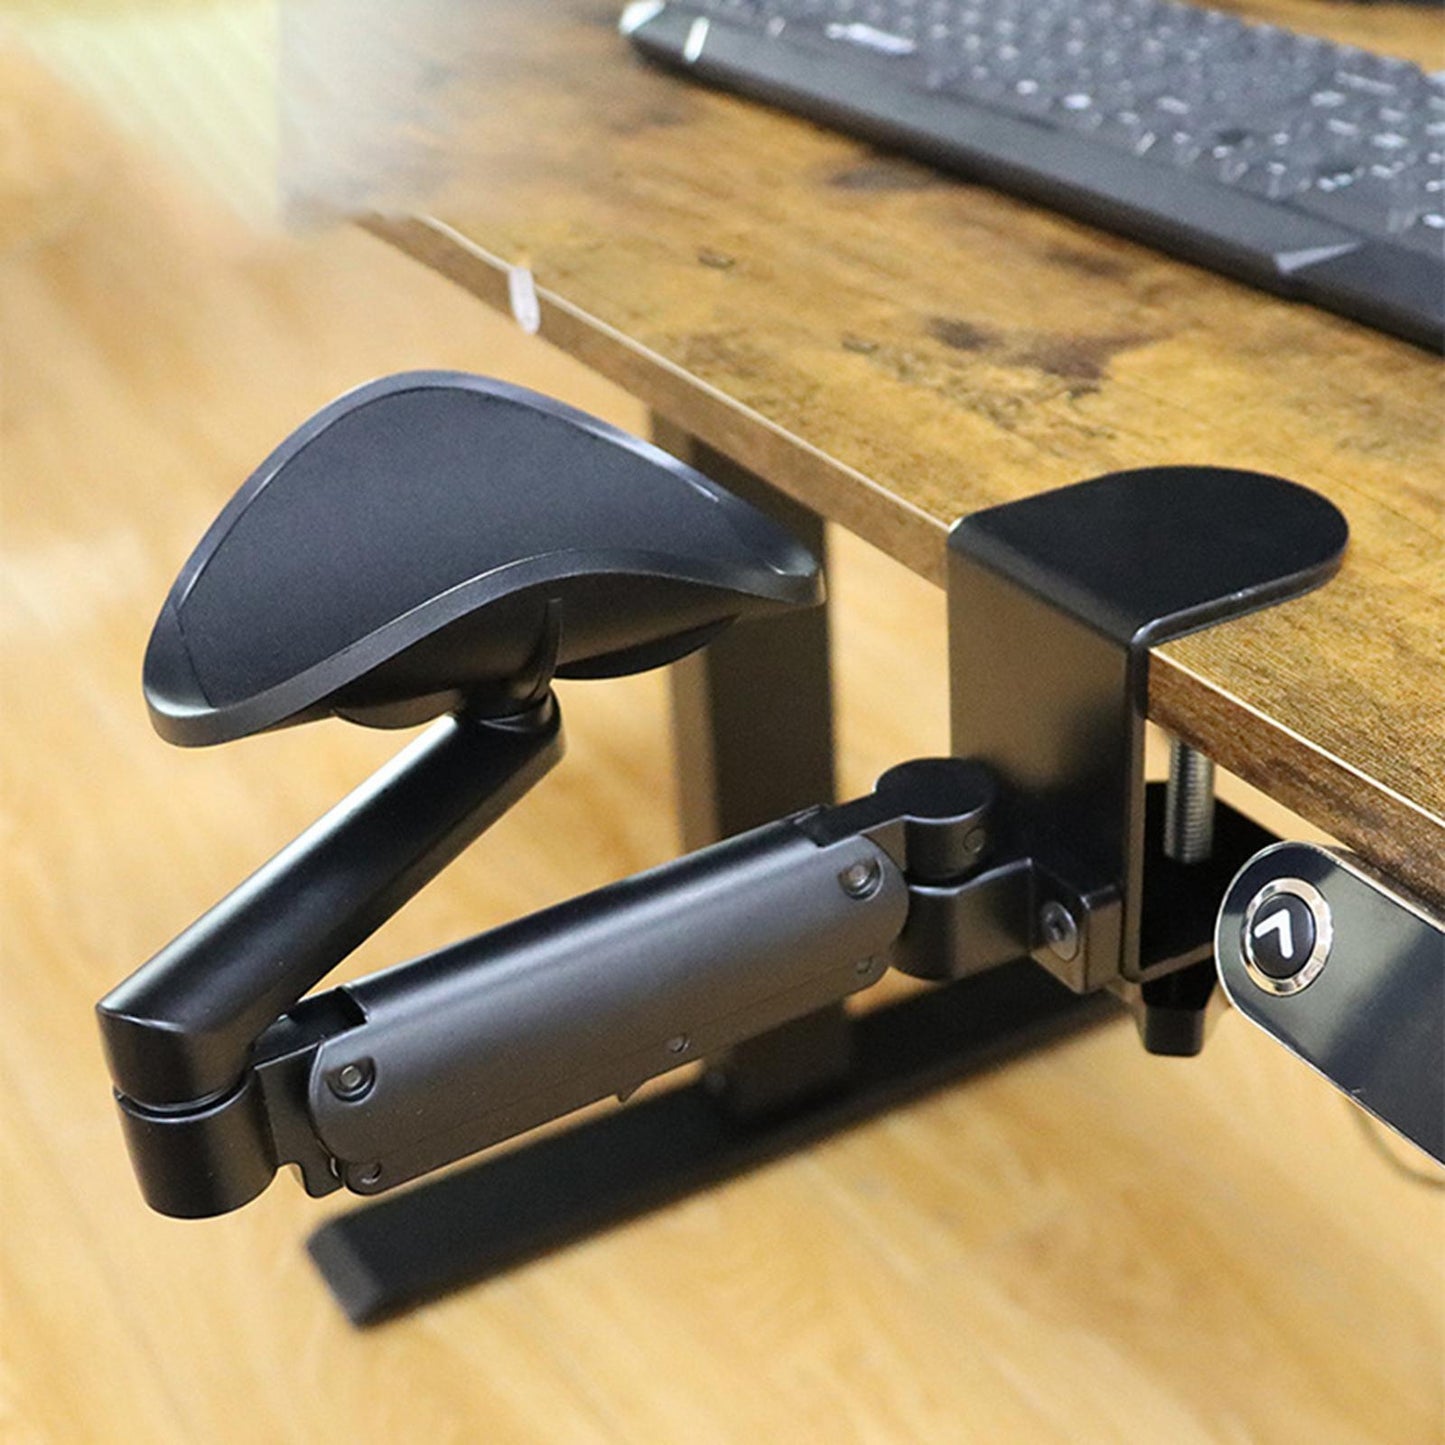 Portable Arm Rest Support for Desk Ergonomic Adjustable Computer Armrest Bracket for Desk Chair Mount Keyboard Tray Arm Rest